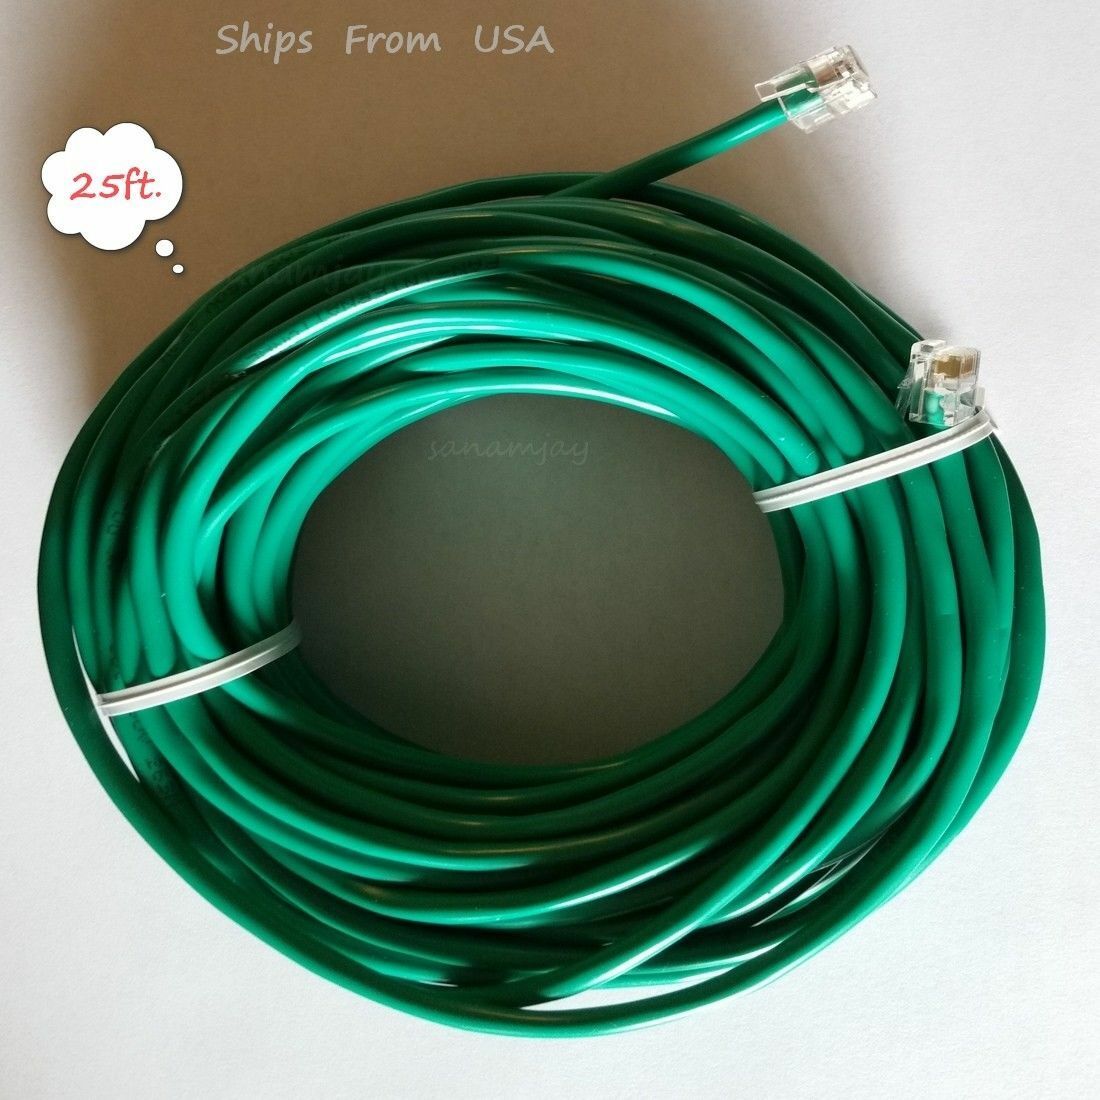 25ft. Rj11 Rj12 Green Dsl Telephone Data Cable For At$t, Centurylink, Earthlink